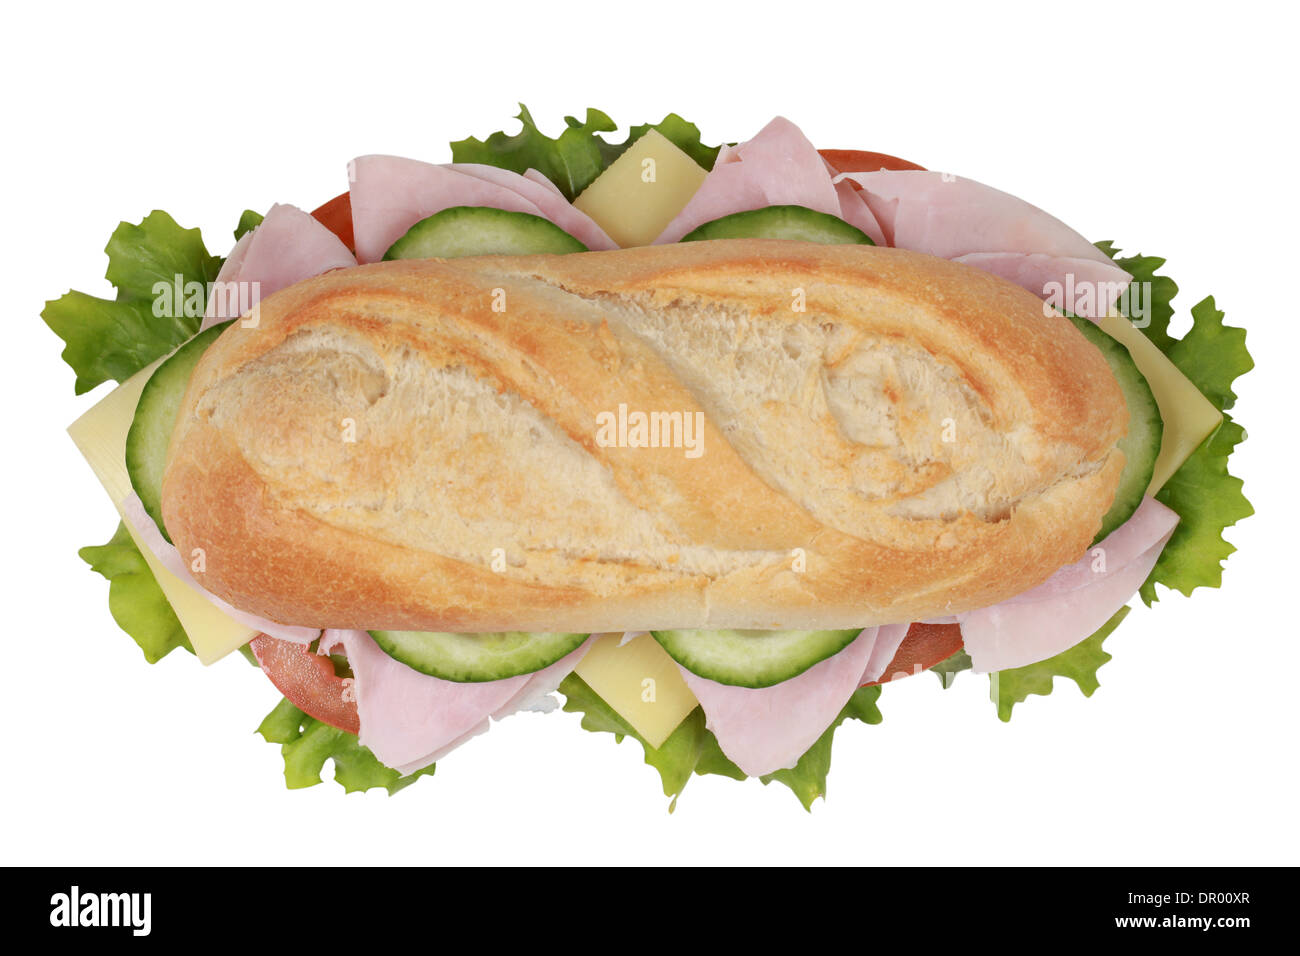 Vista dall'alto di un panino con prosciutto e formaggio, pomodori, lattuga e cetriolo Foto Stock